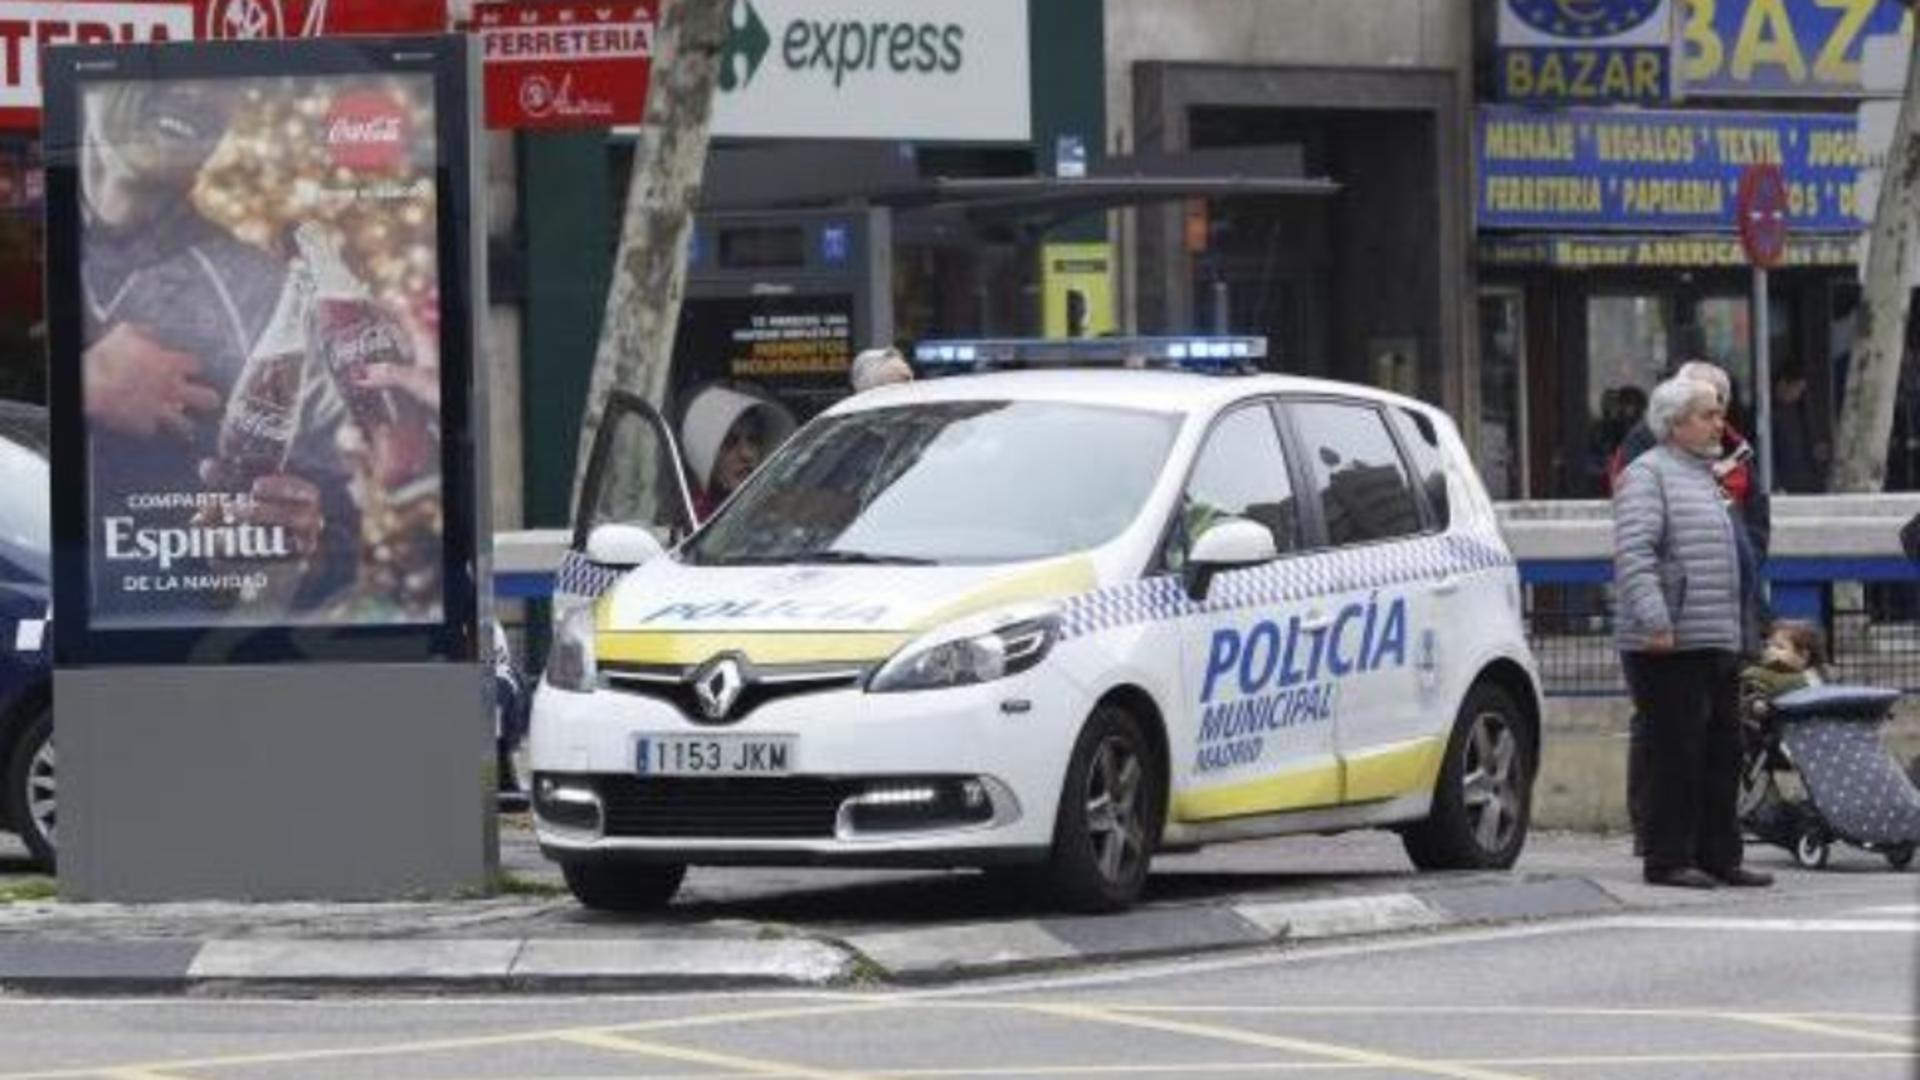 Româncă, arestată în Spania după ce și-a hărțuit antrenorul de fitness. Femeia a amenințat-o chiar și pe soția acestuia